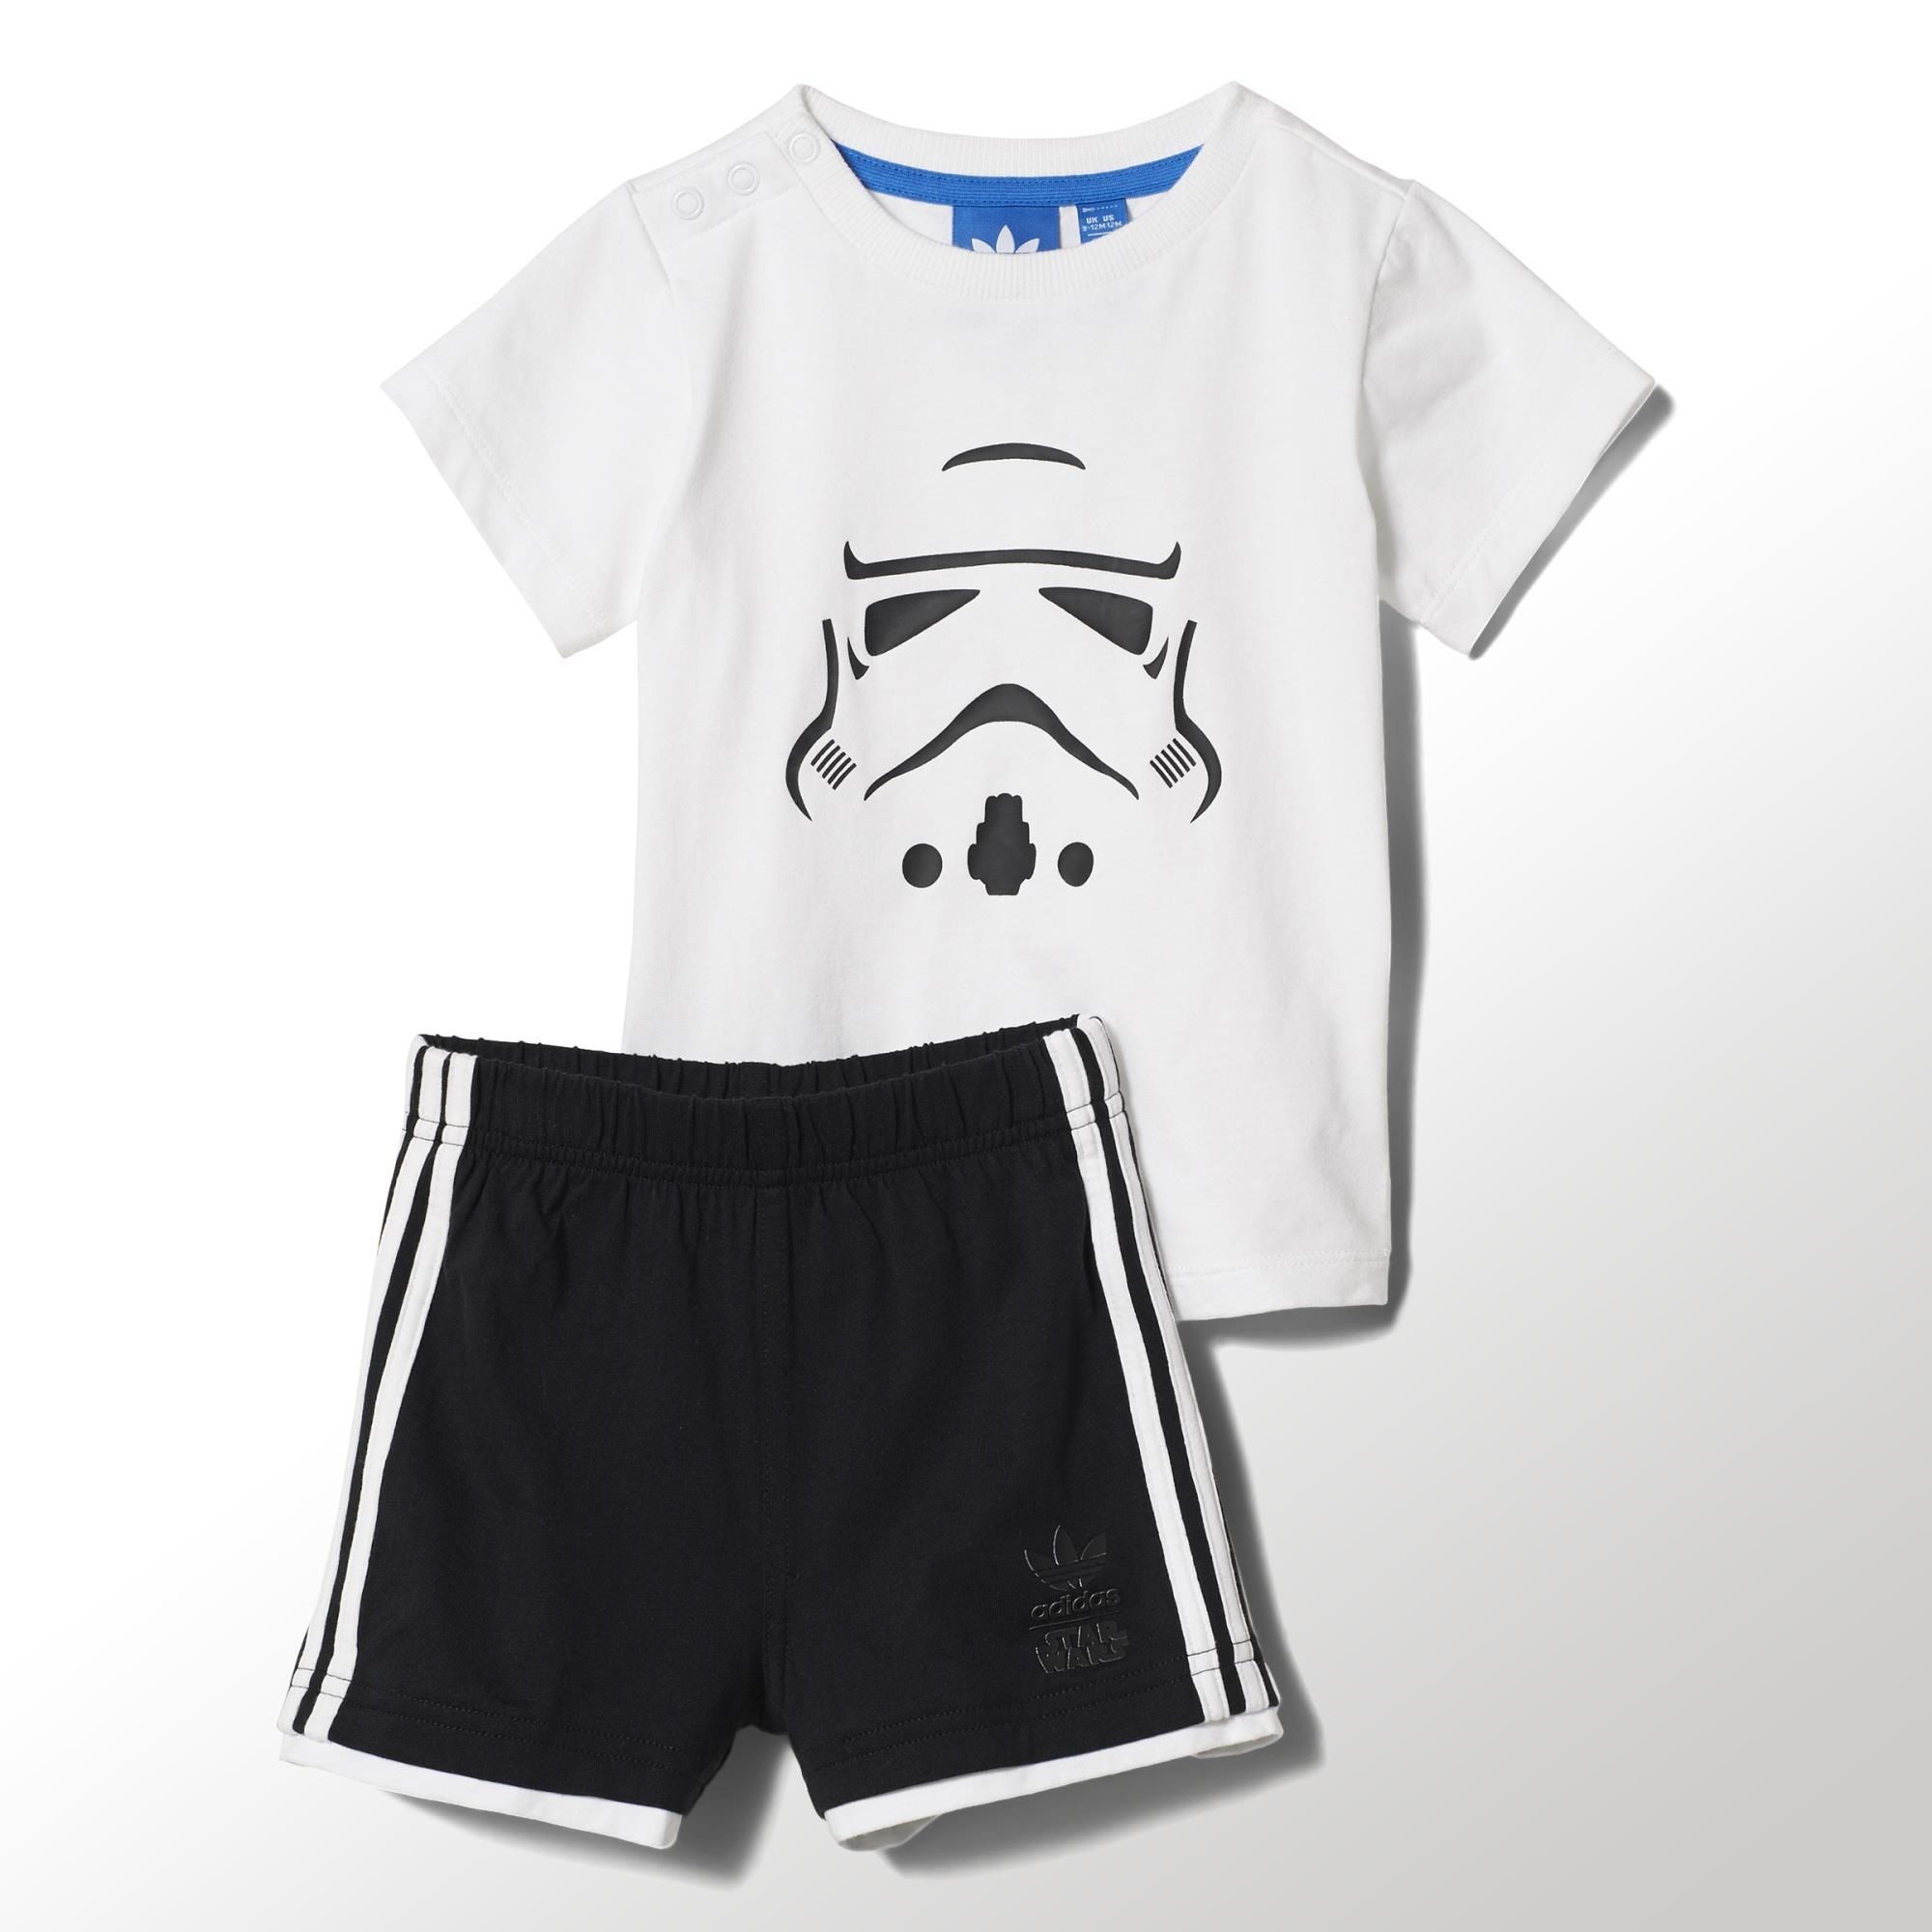 Adidas Originals Conjunto Star Wars (blanco/negro)